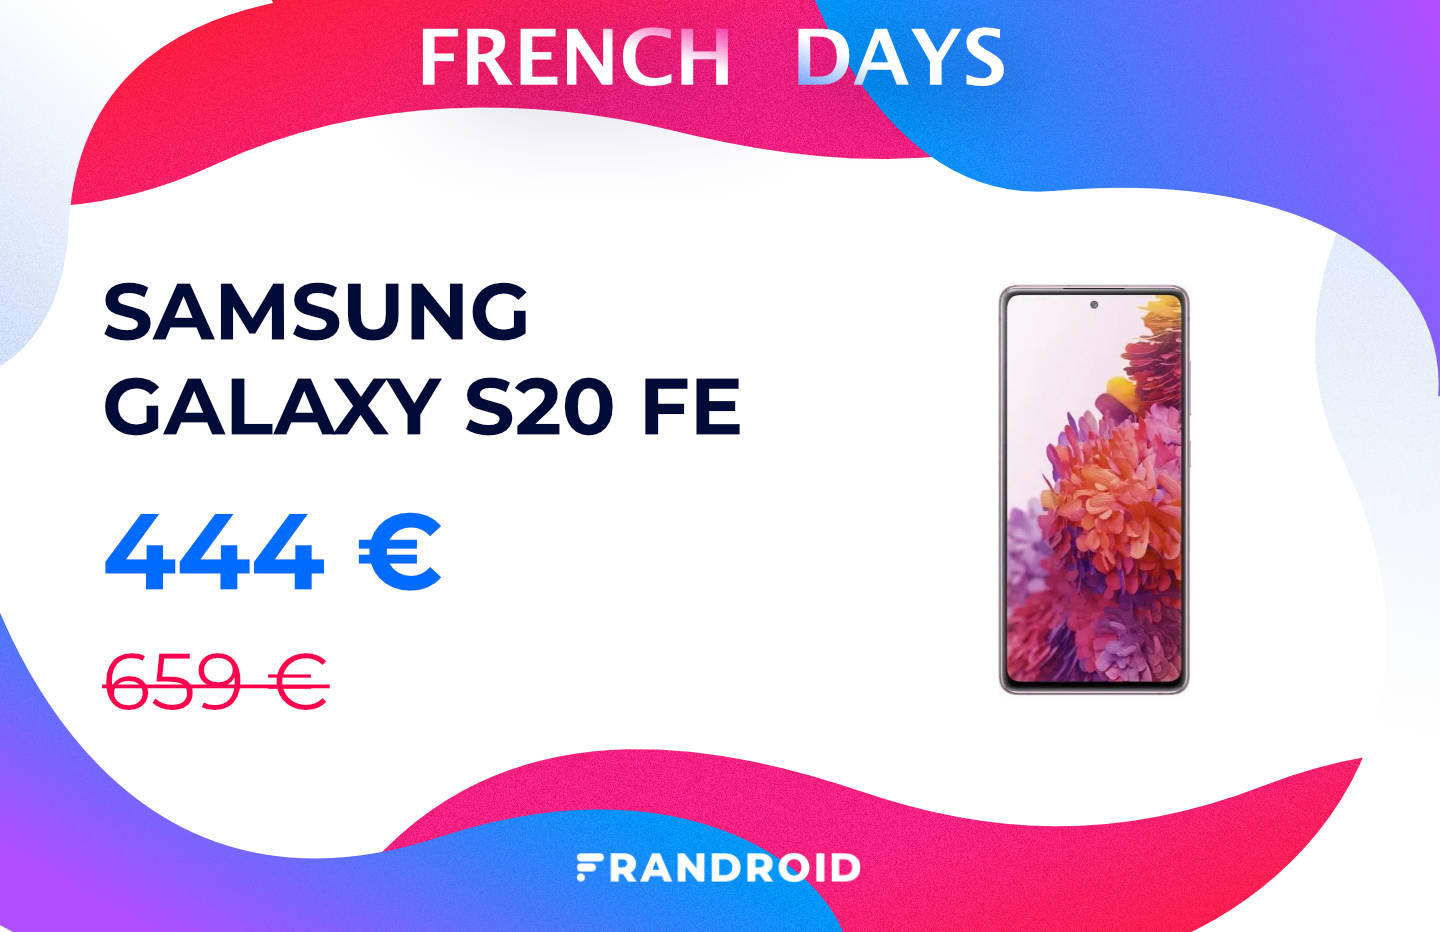 Le Samsung Galaxy S20 FE ne résiste pas aux promotions des French Days